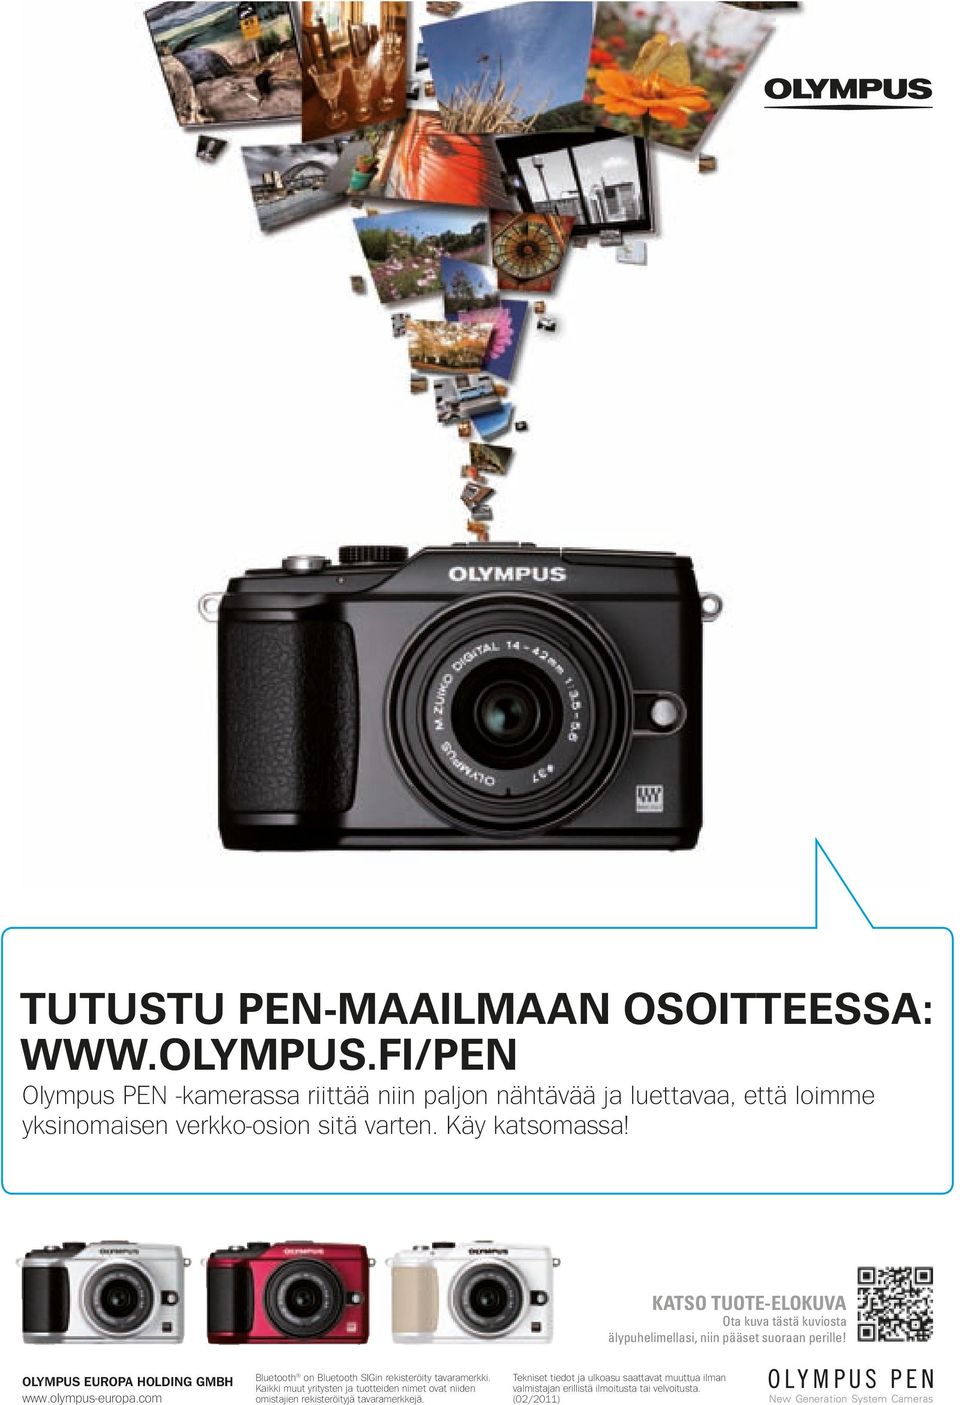 KATSO TUOTE-ELOKUVA Ota kuva tästä kuviosta älypuhelimellasi, niin pääset suoraan perille! OLYMPUS EUROPA HOLDING GMBH www.olympus-europa.